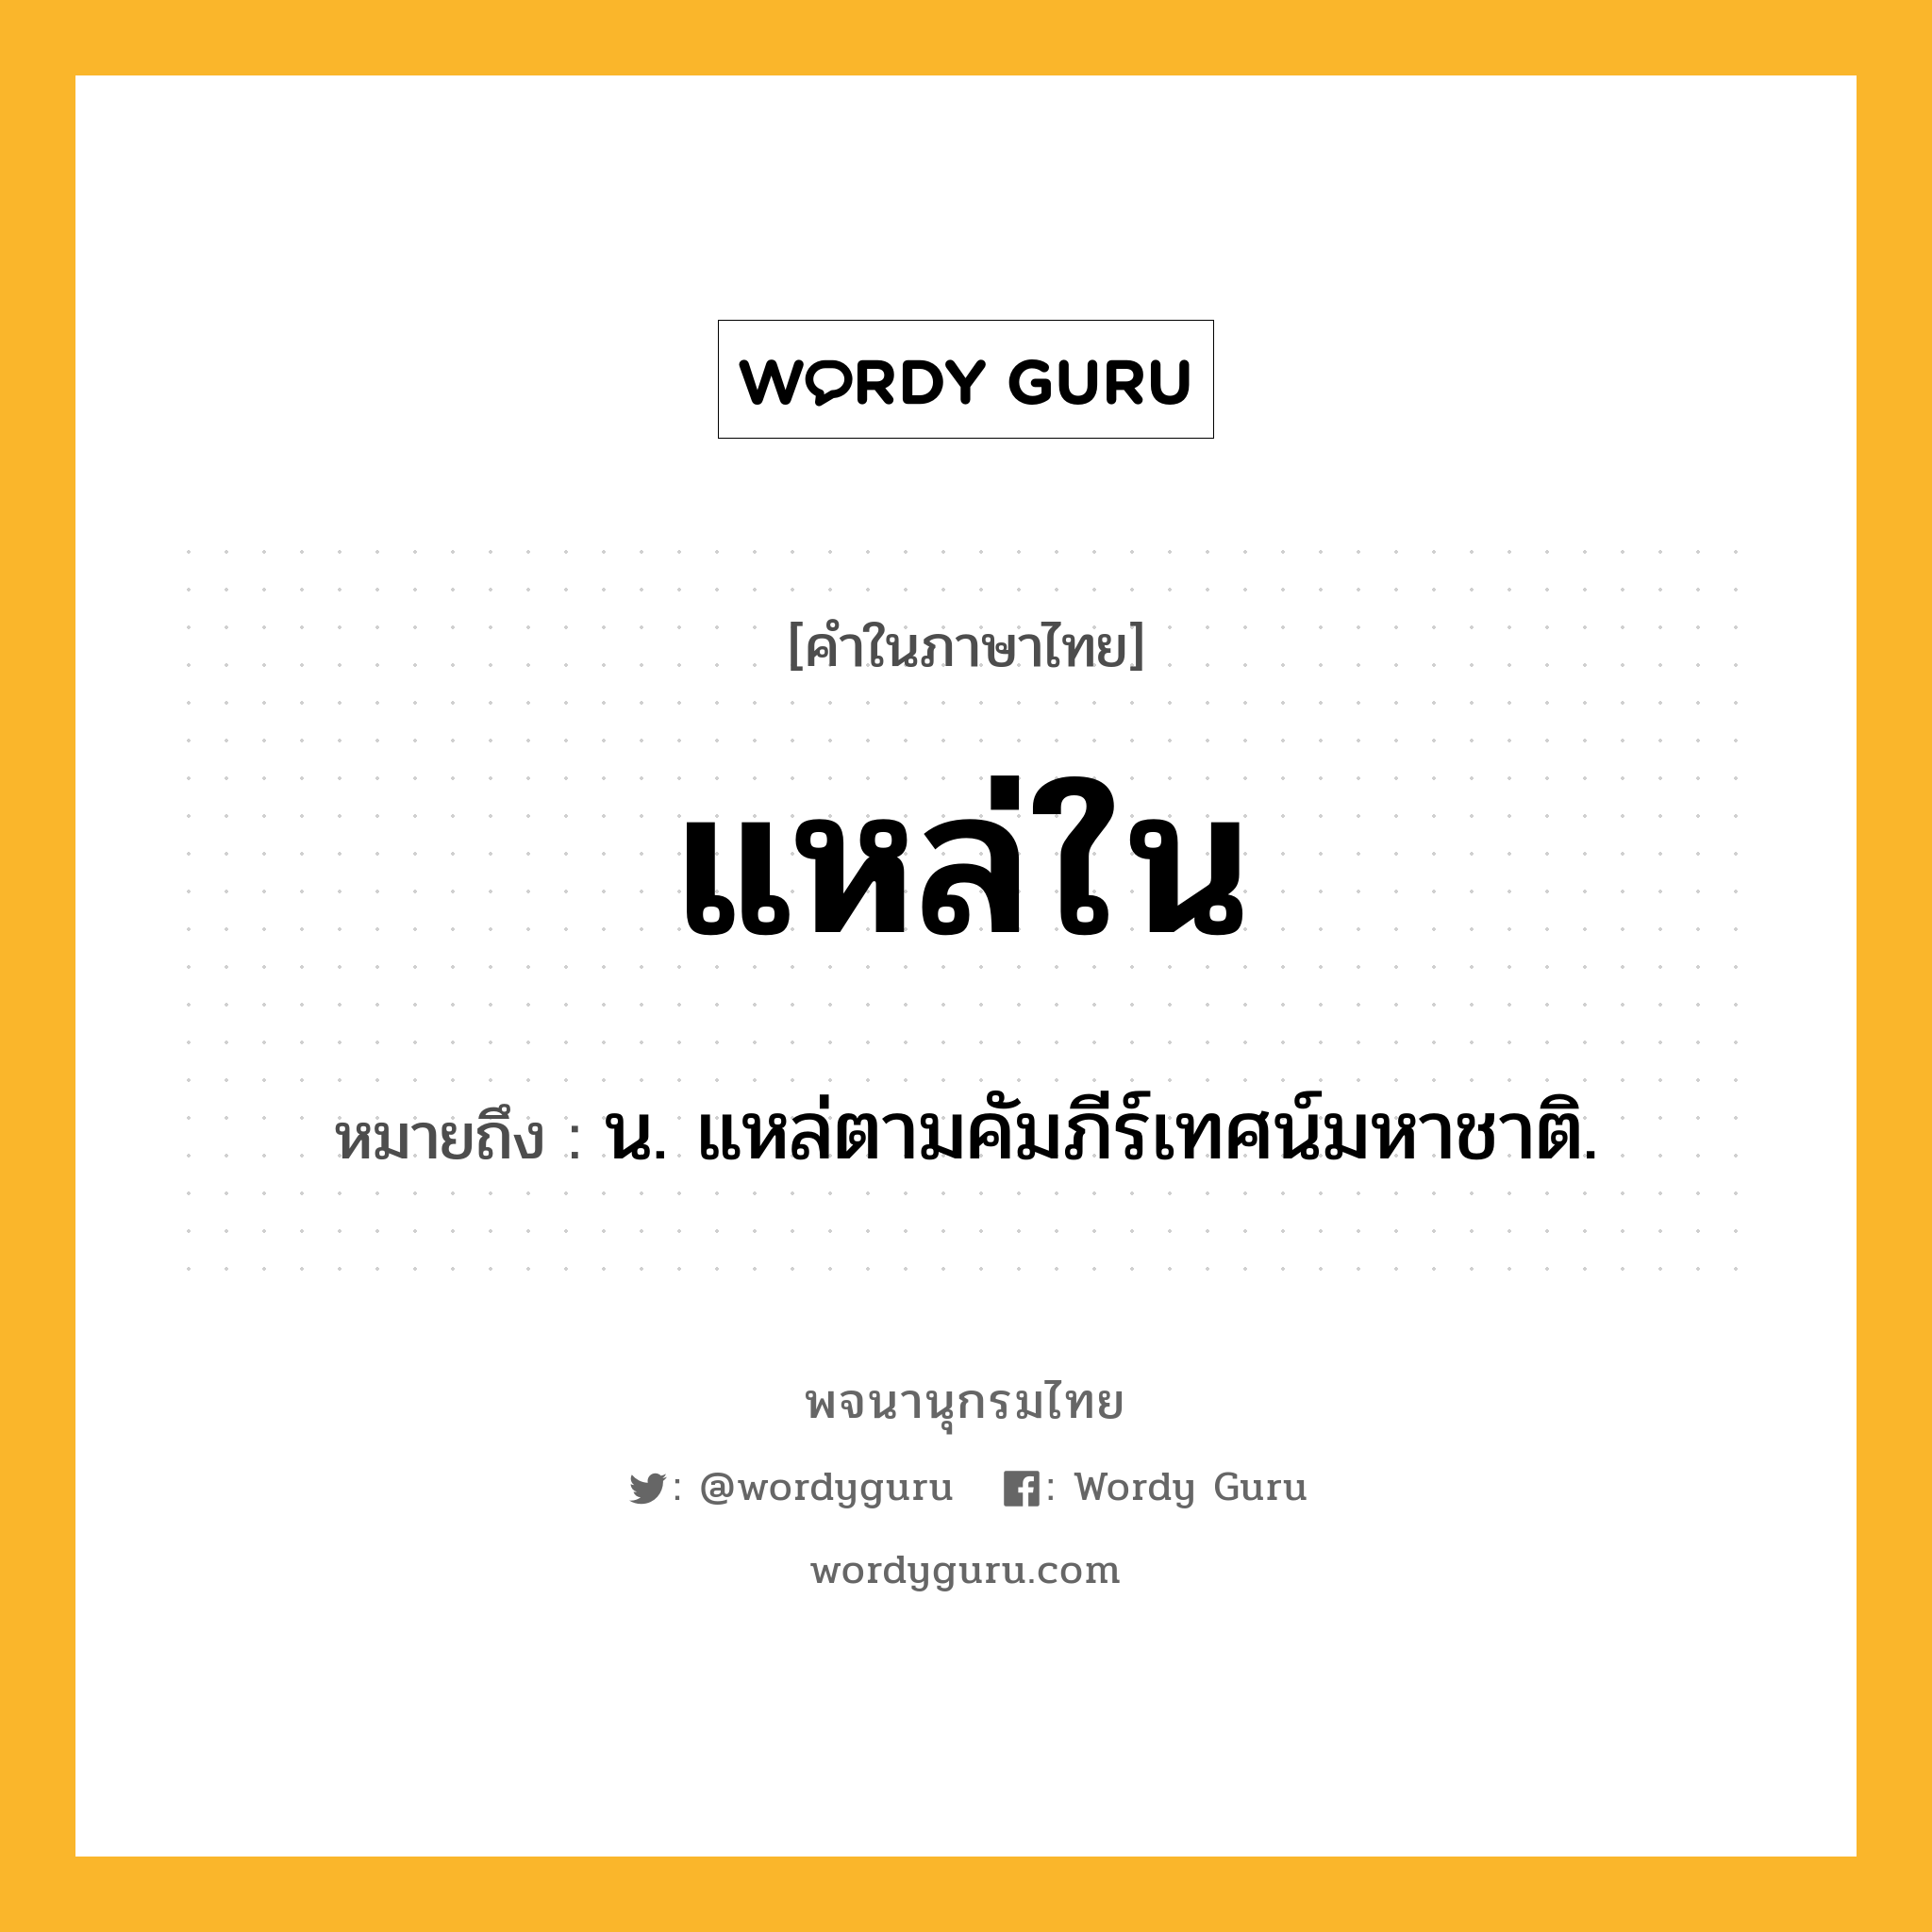 แหล่ใน หมายถึงอะไร?, คำในภาษาไทย แหล่ใน หมายถึง น. แหล่ตามคัมภีร์เทศน์มหาชาติ.